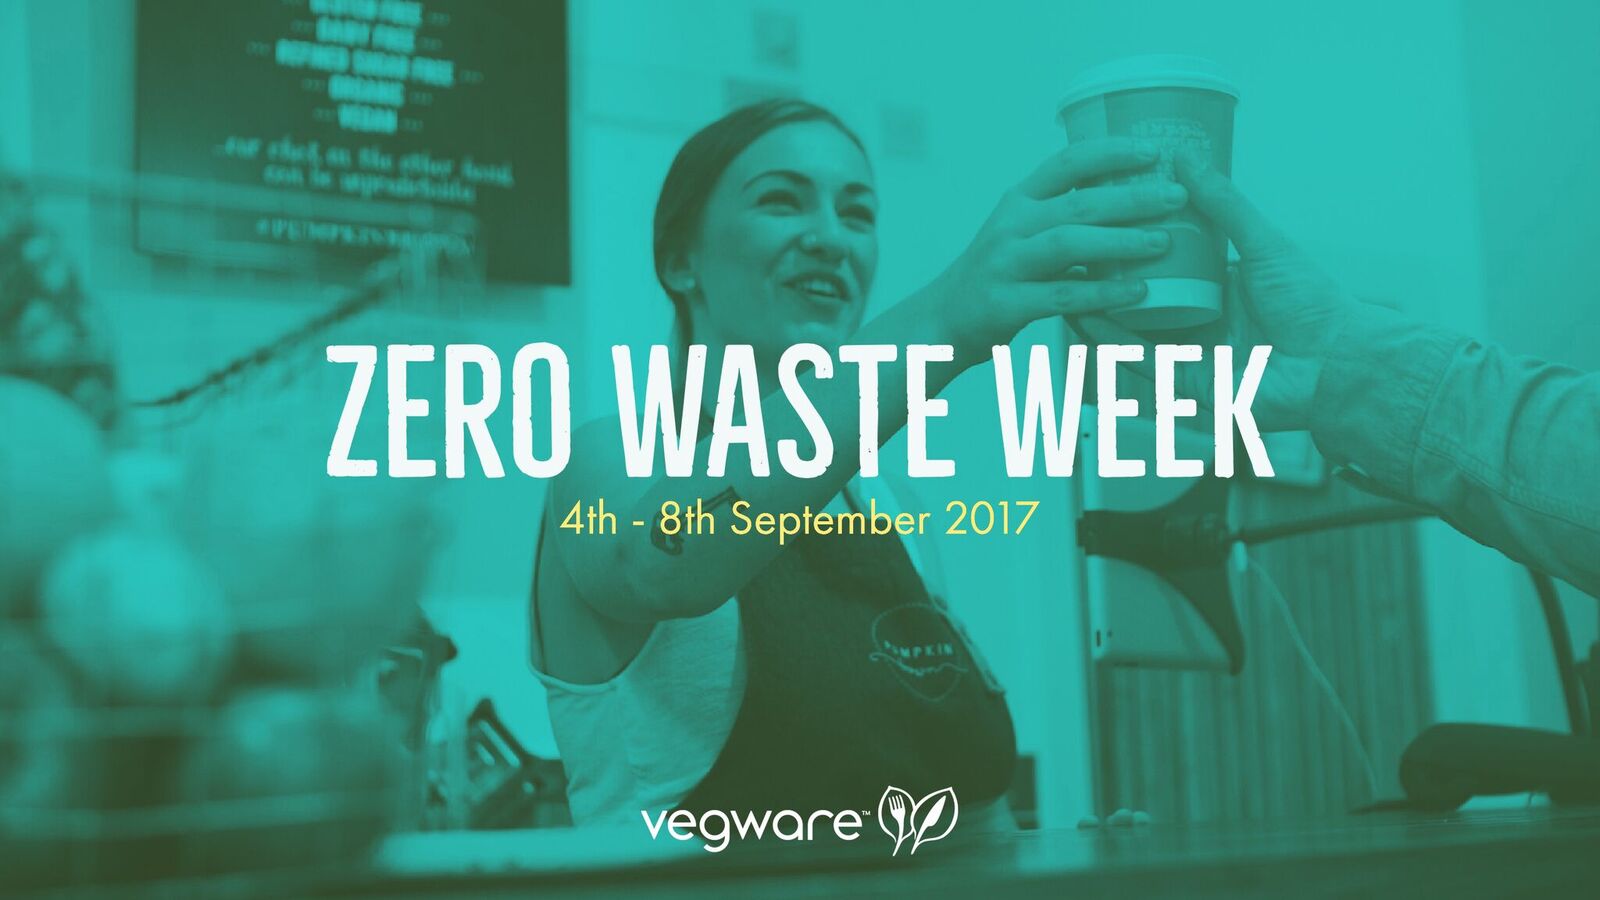 Zero waste week